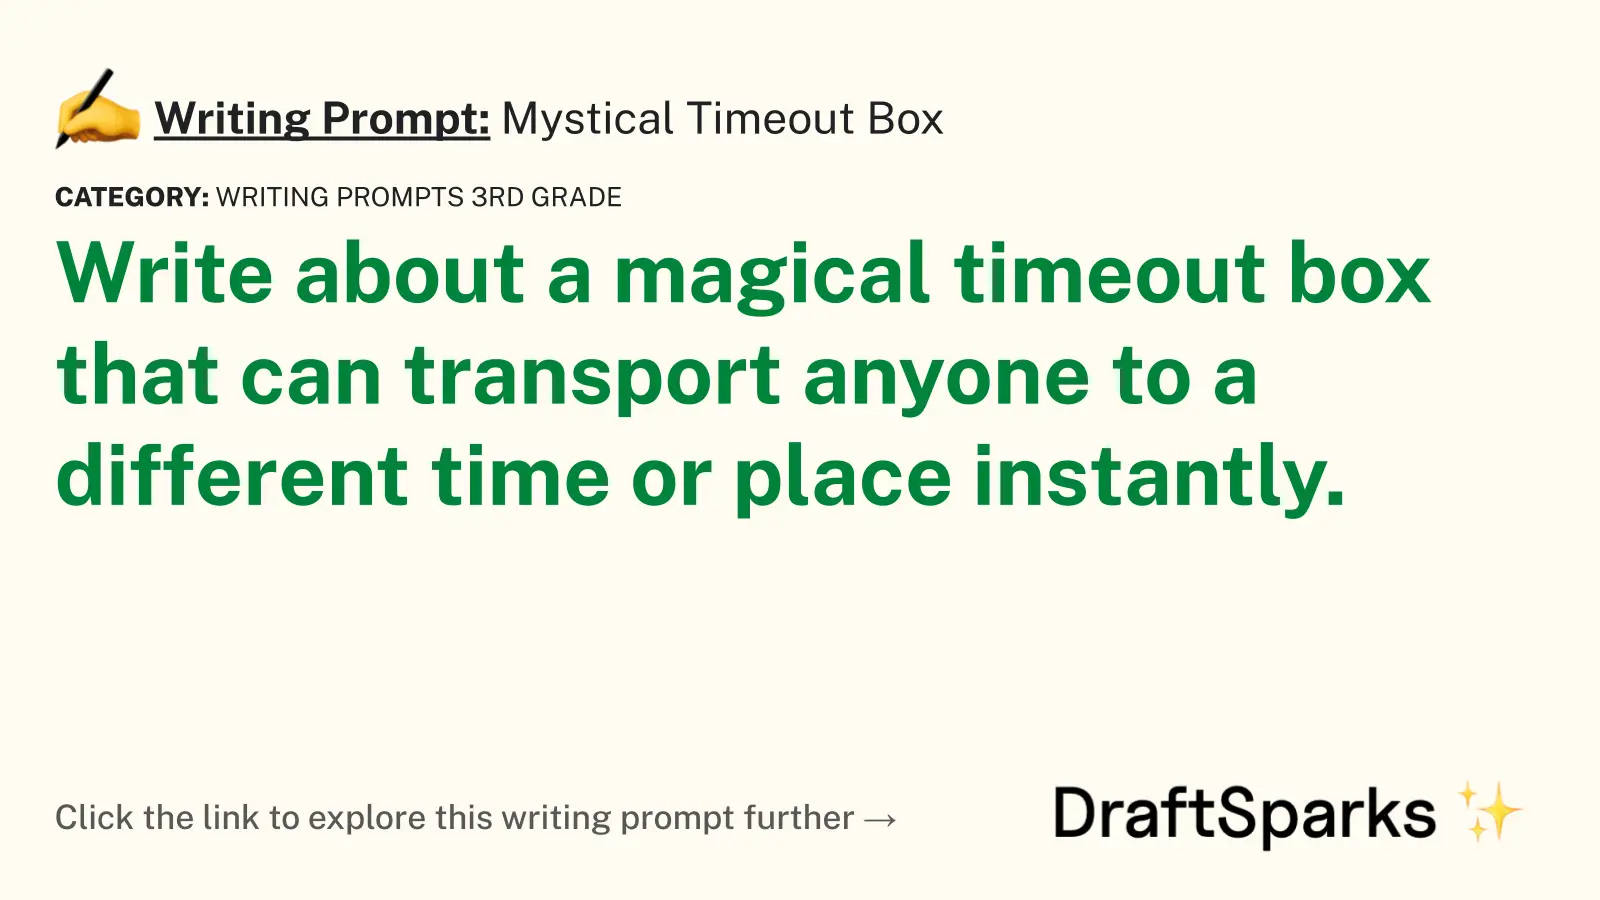 Mystical Timeout Box